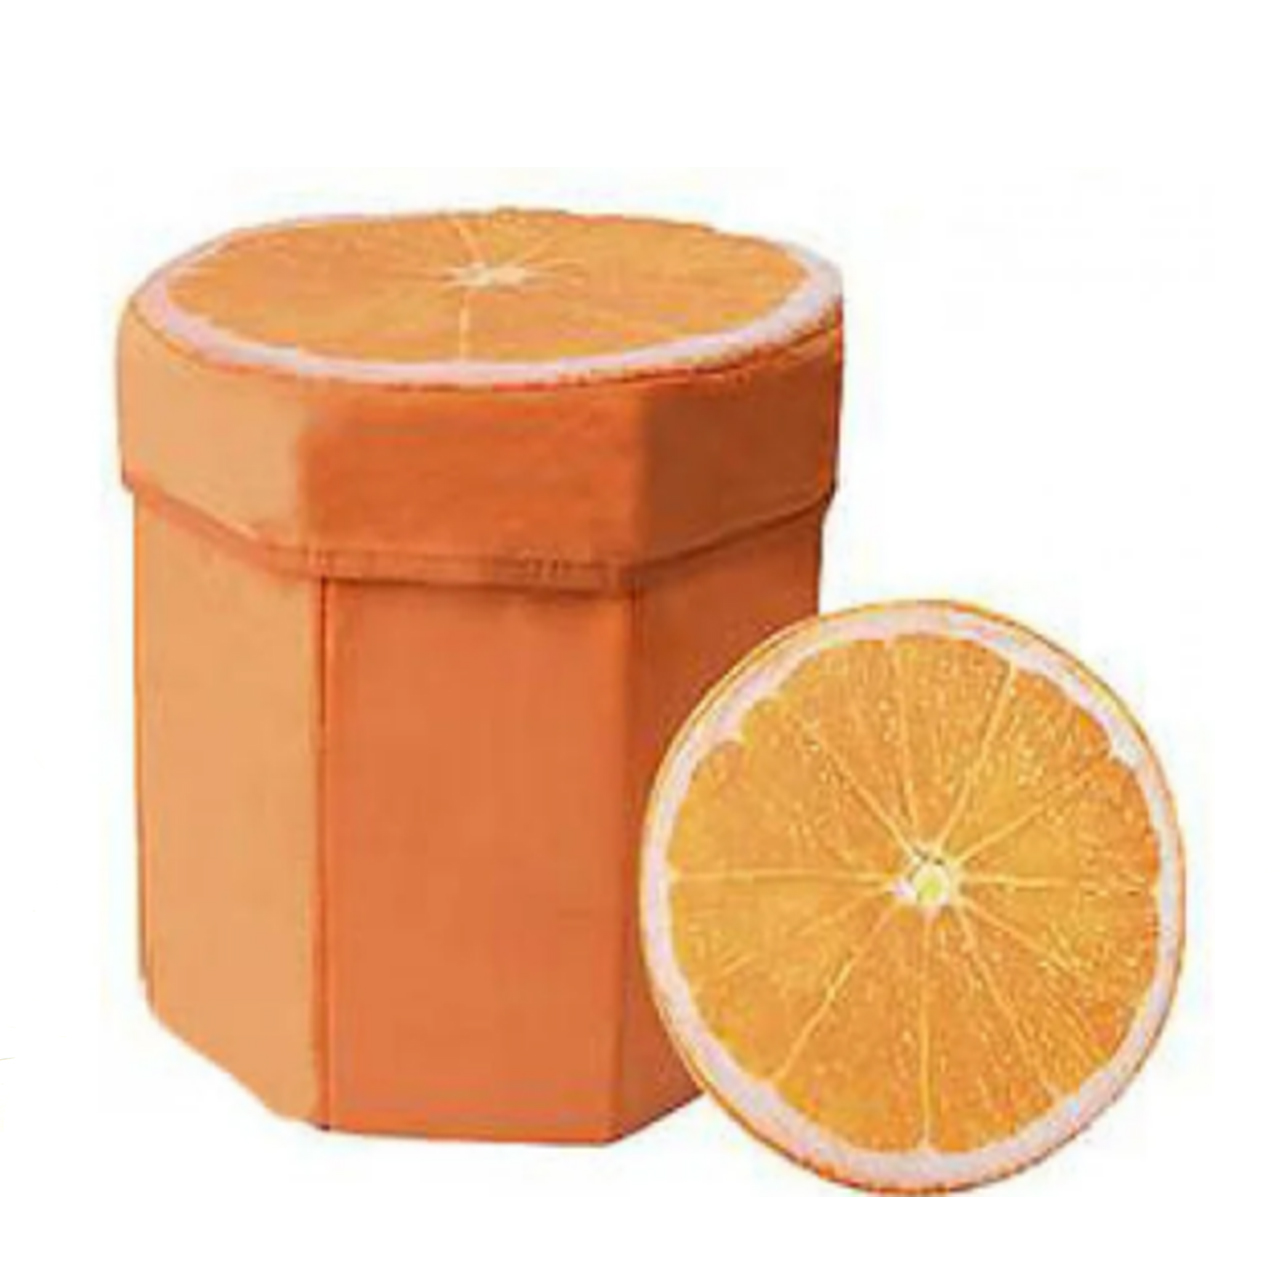 Пуфик апельсин